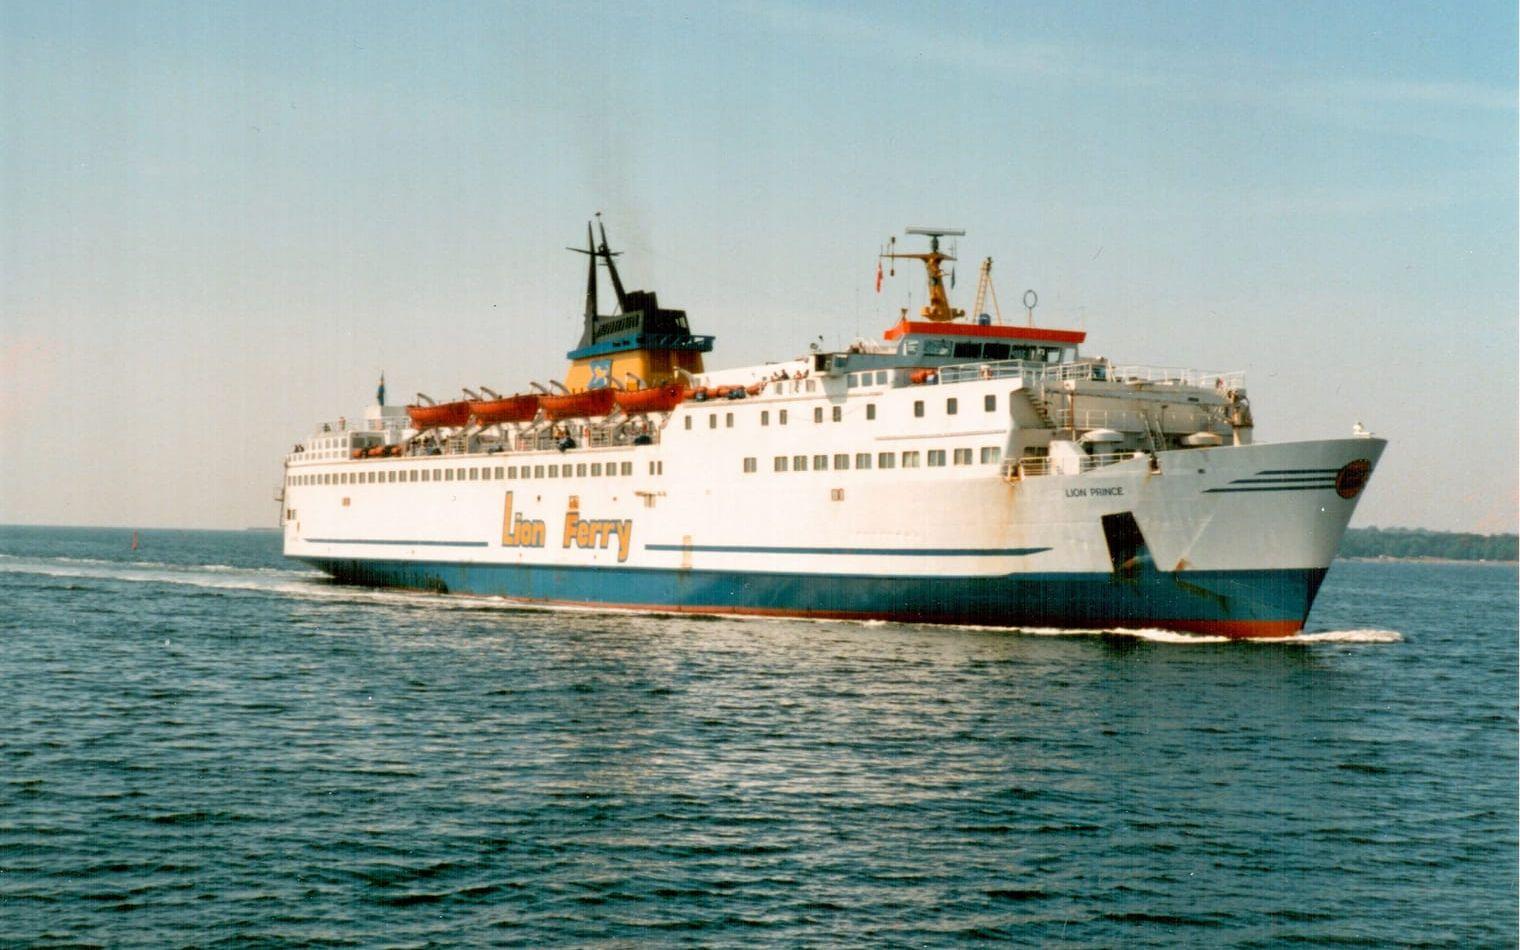 1988 beslutar sig Stena för att återuppta färjetrafiken mellan Halmstad och Grenå. Lion Prince blev ett av fartygen fram till nedläggningen tio år senare. Bild: Anders Bergenek